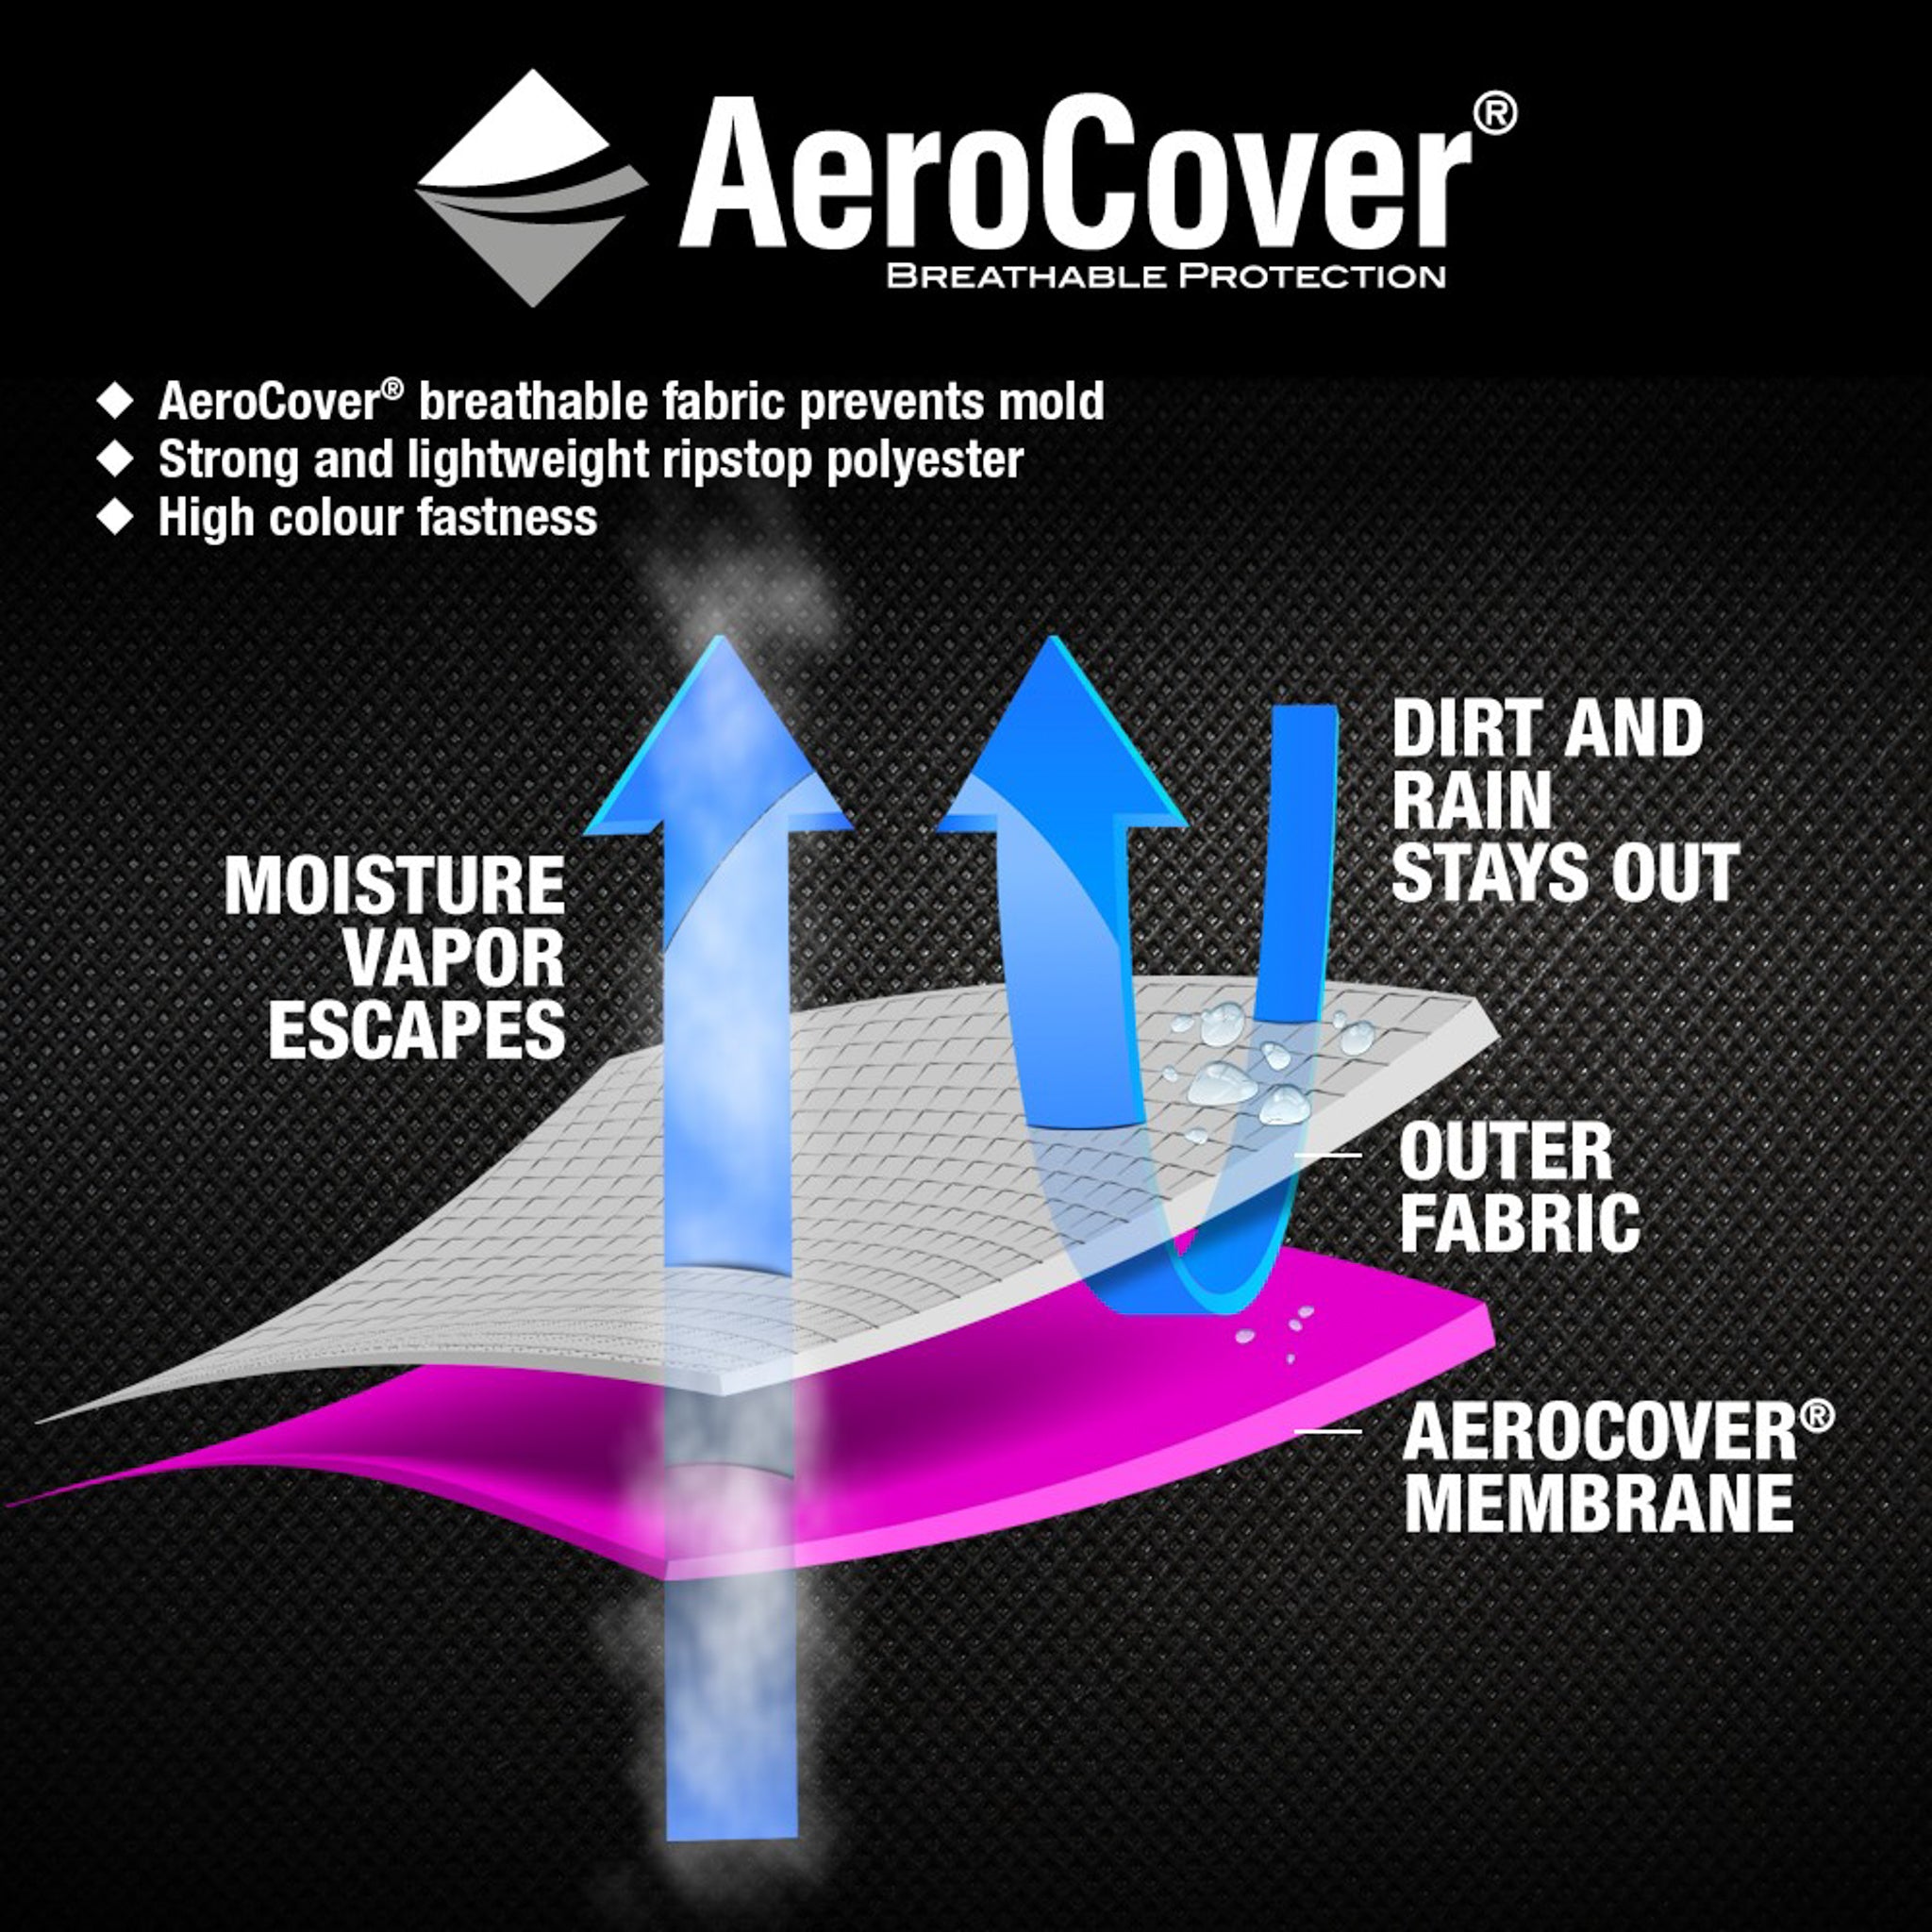 AeroCover - Garden Set Oblong Cover 305x190x85cm high